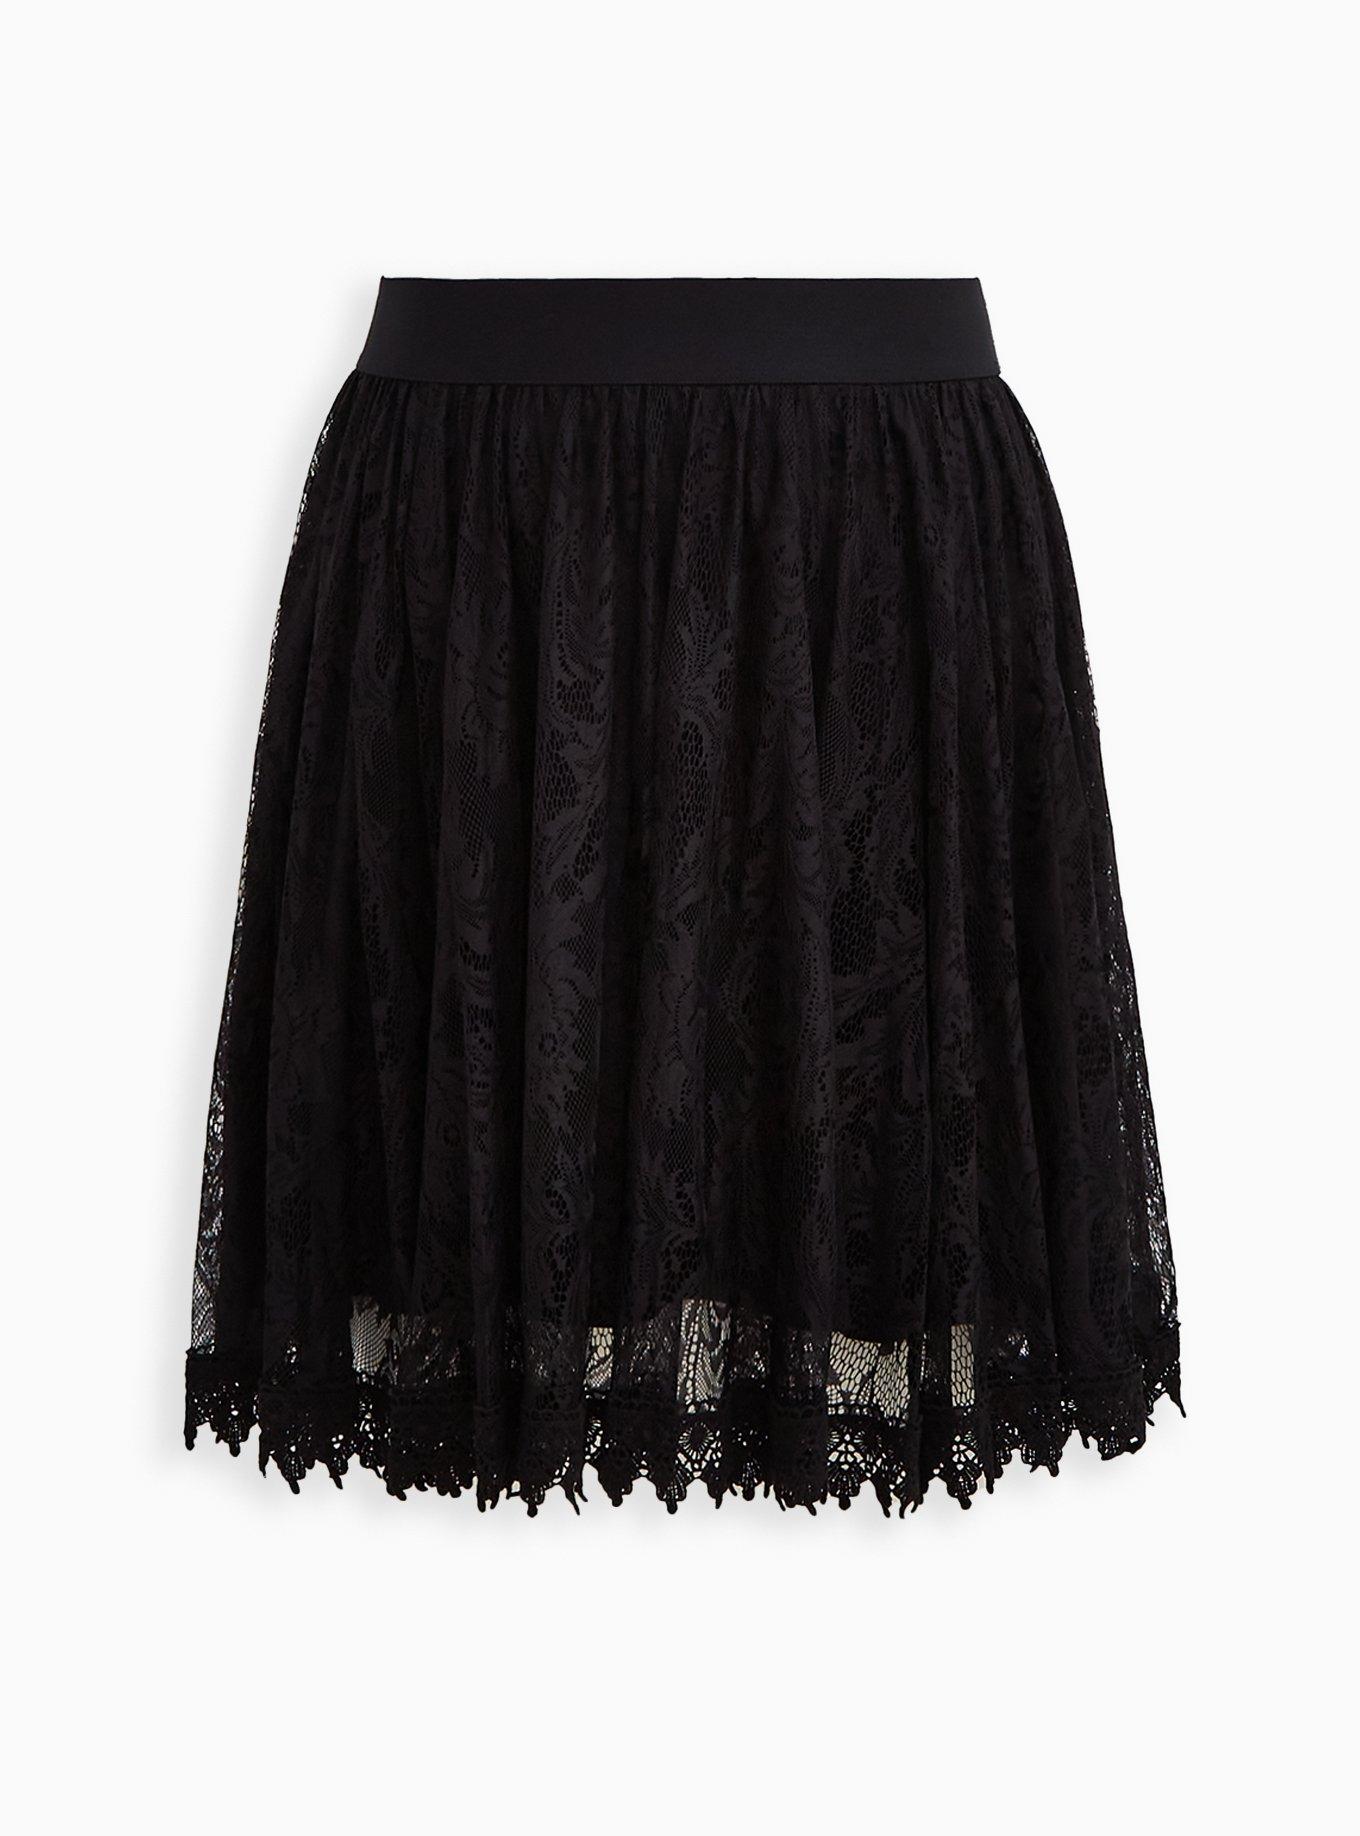 Plus Size - Mini Skirt - Lace Black - Torrid